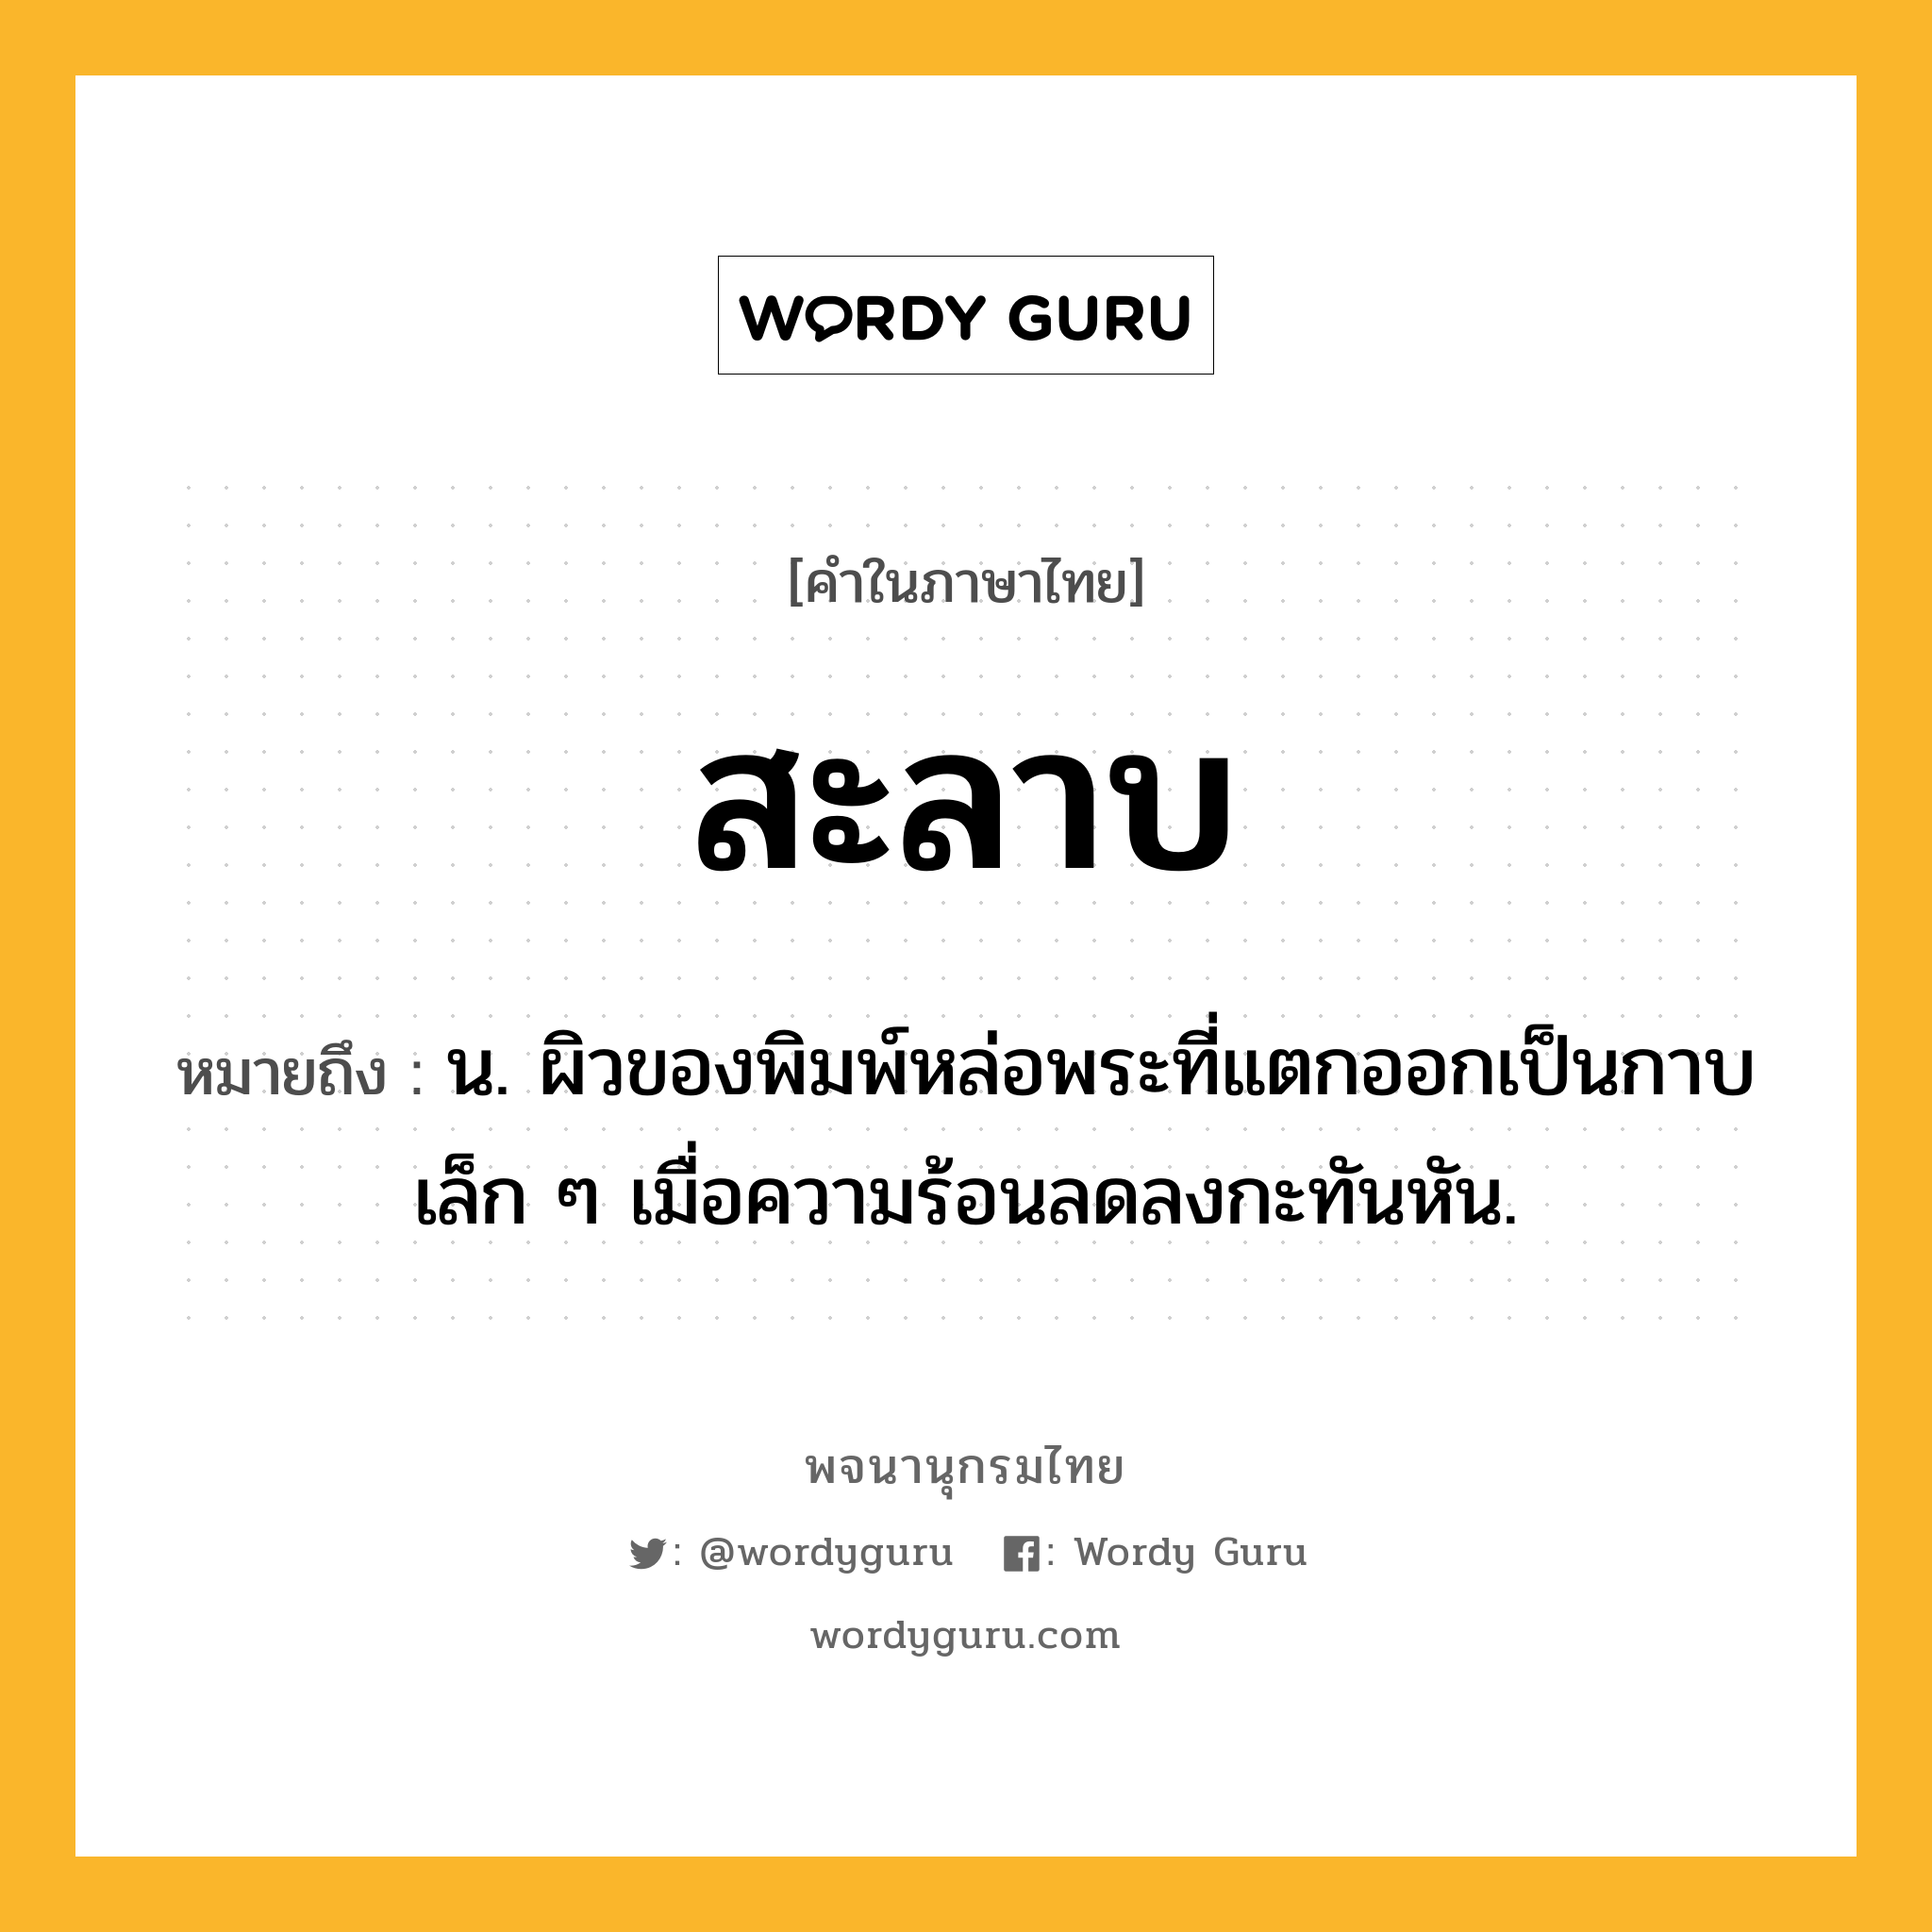 สะลาบ ความหมาย หมายถึงอะไร?, คำในภาษาไทย สะลาบ หมายถึง น. ผิวของพิมพ์หล่อพระที่แตกออกเป็นกาบเล็ก ๆ เมื่อความร้อนลดลงกะทันหัน.